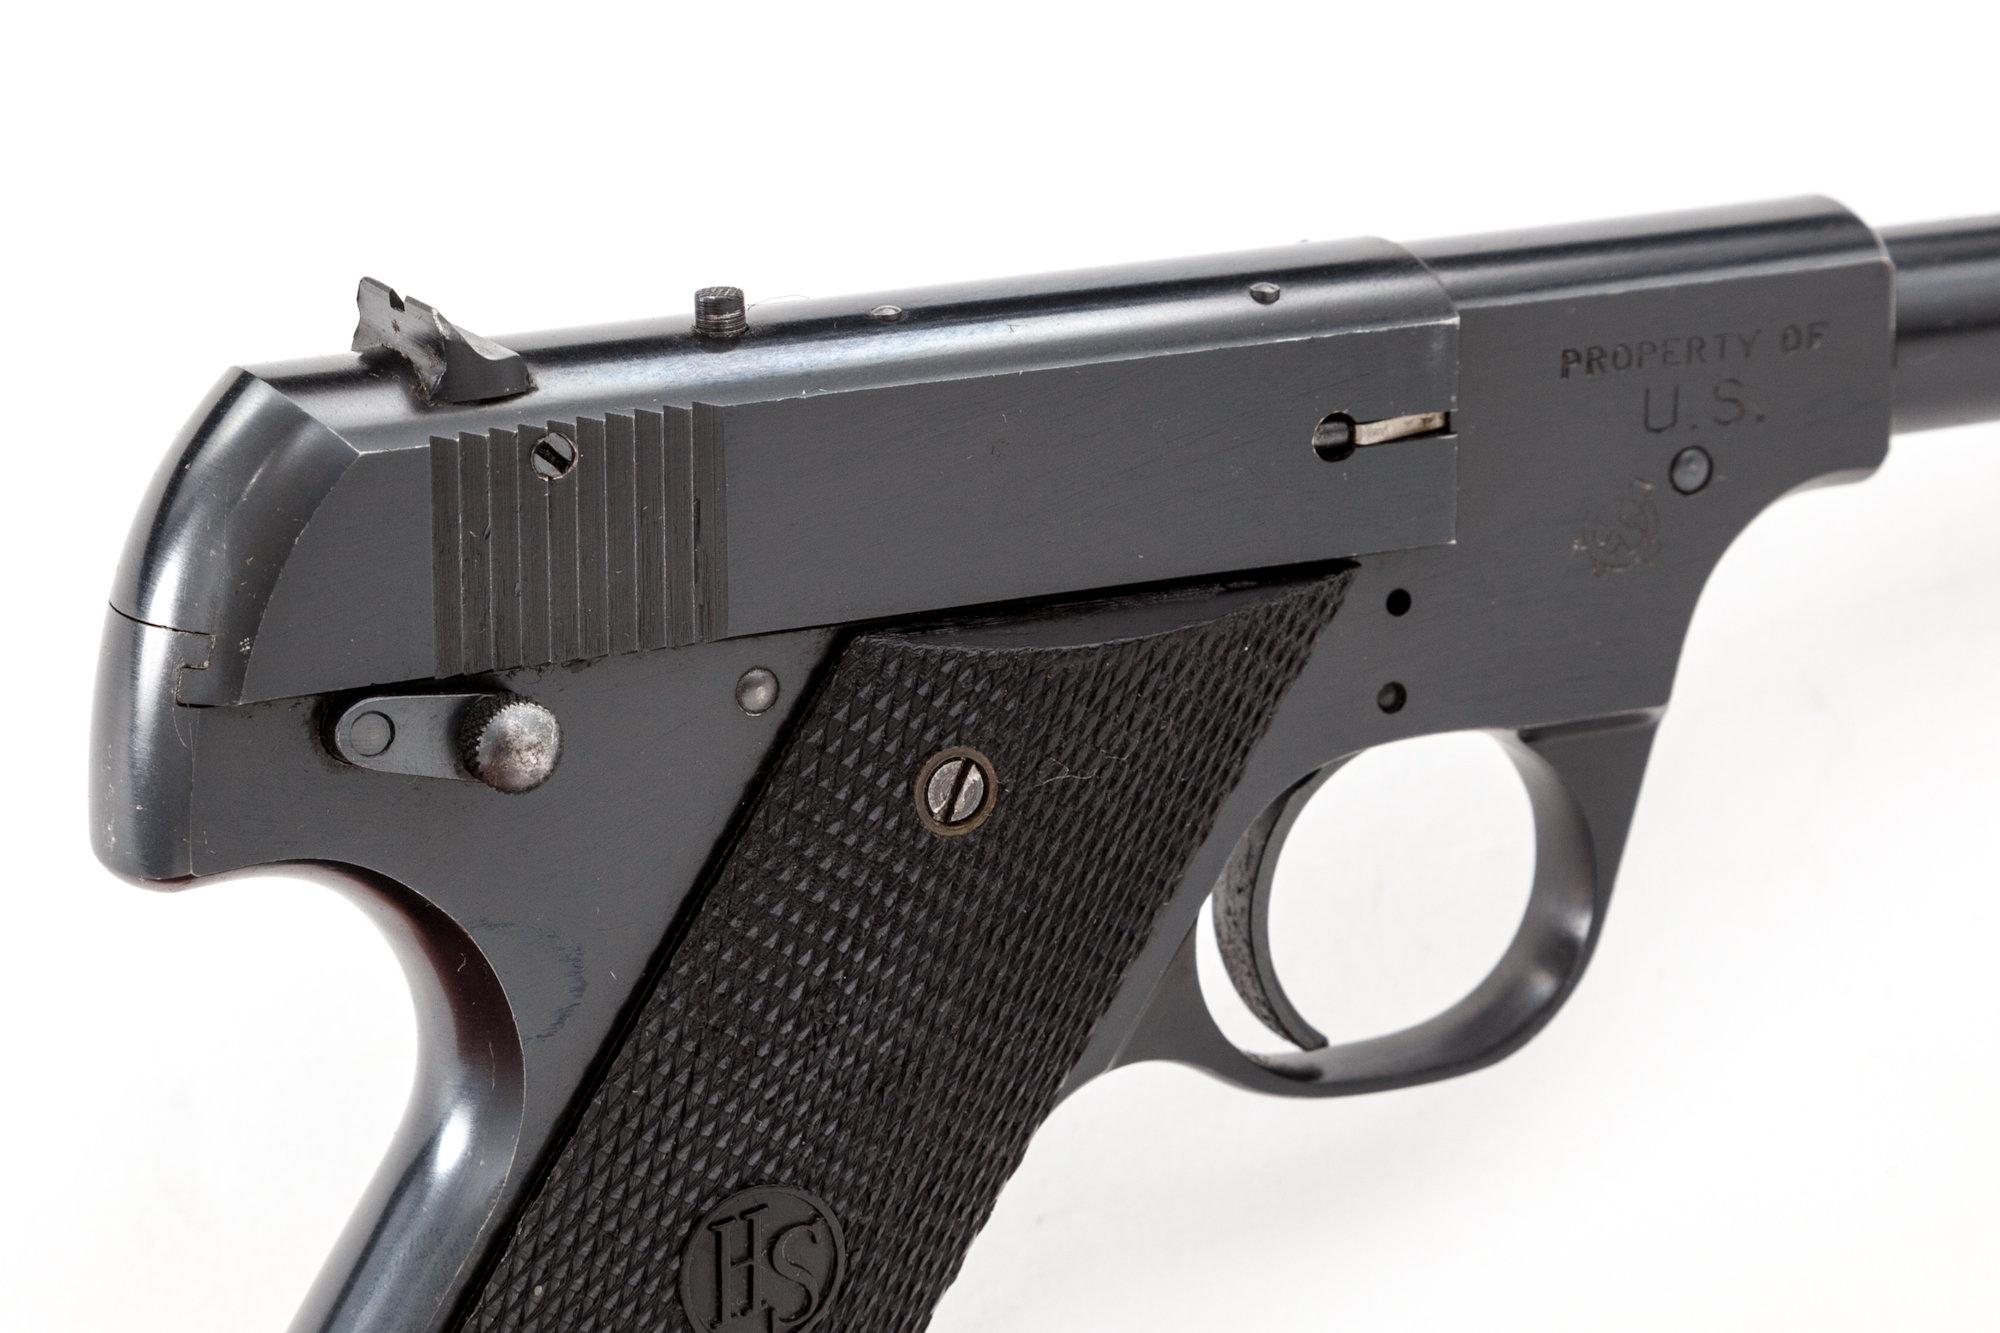 U.S. Prop. mkd Hi-Standard Model B Sporting Pistol